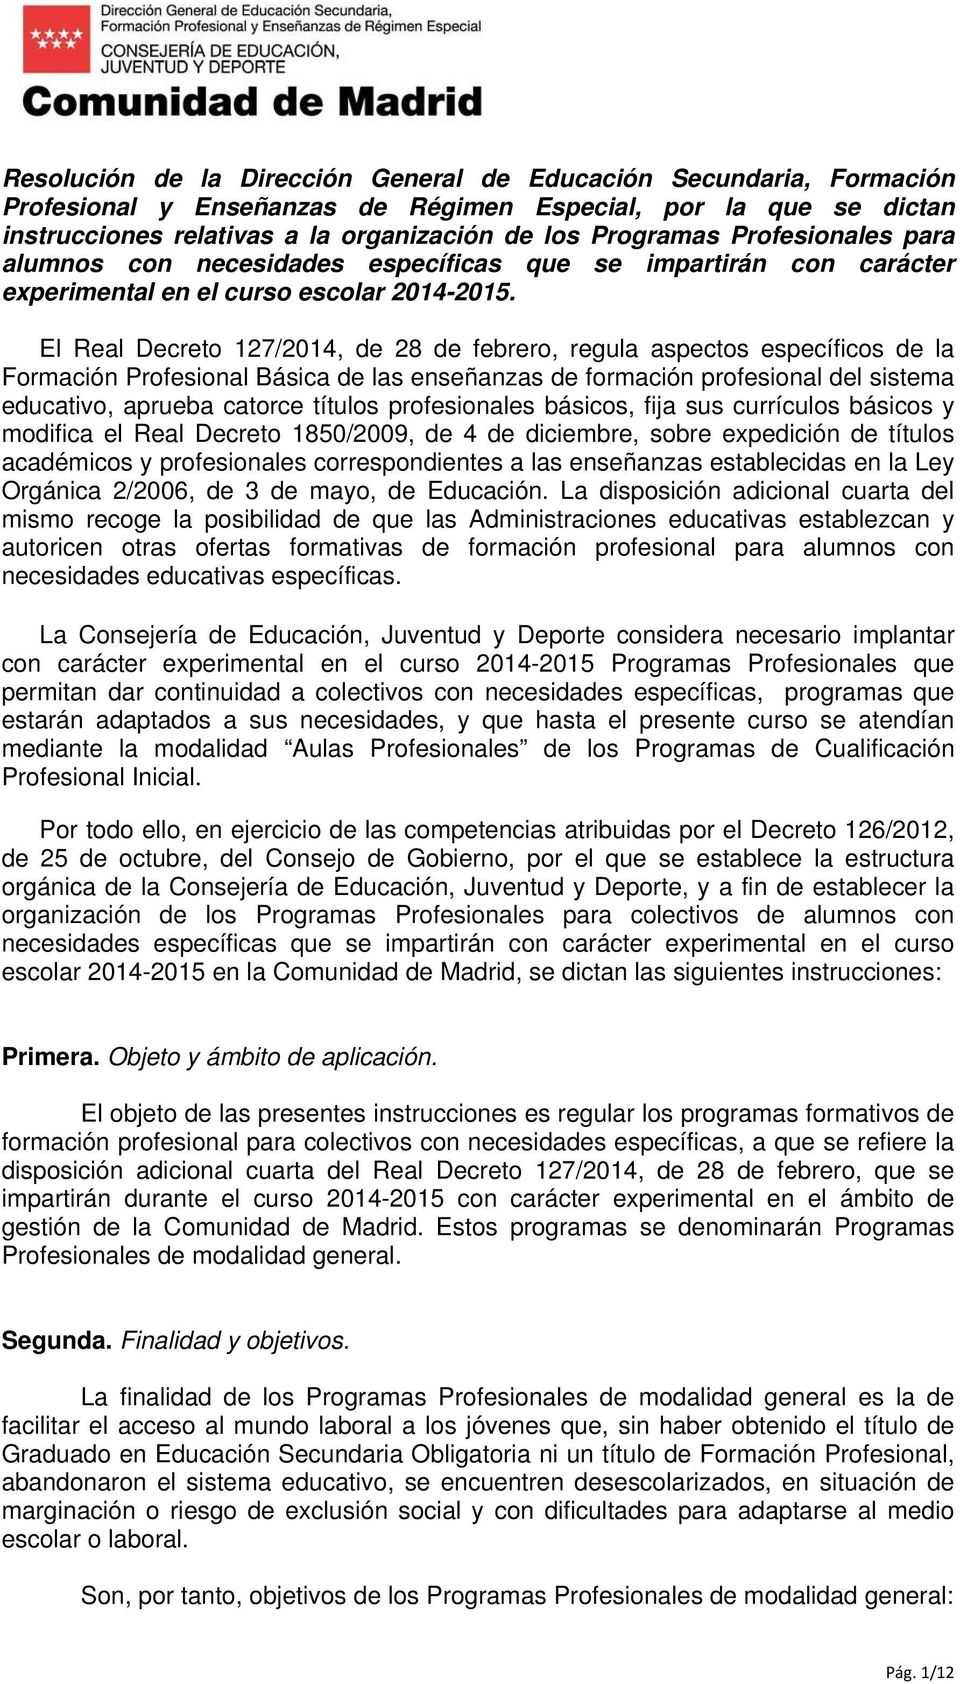 El Real Decreto 127/2014, de 28 de febrero, regula aspectos específicos de la Formación Profesional Básica de las enseñanzas de formación profesional del sistema educativo, aprueba catorce títulos